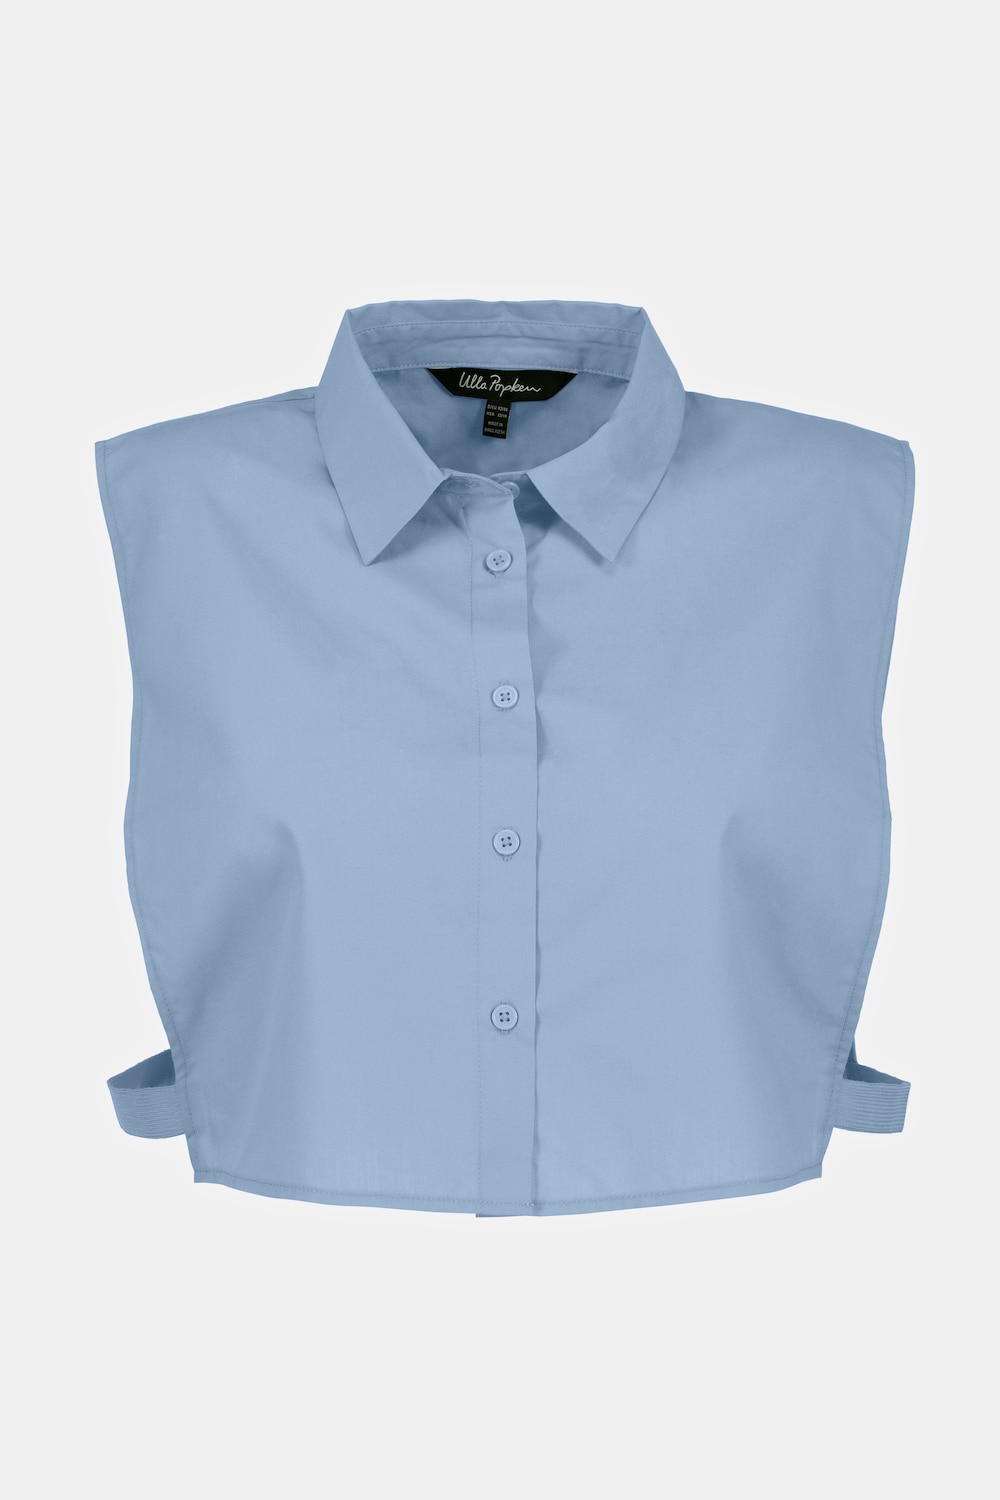 Grote Maten blouse-kraag, Dames, blauw, Maat: 54/56, Katoen/Polyester, Ulla Popken